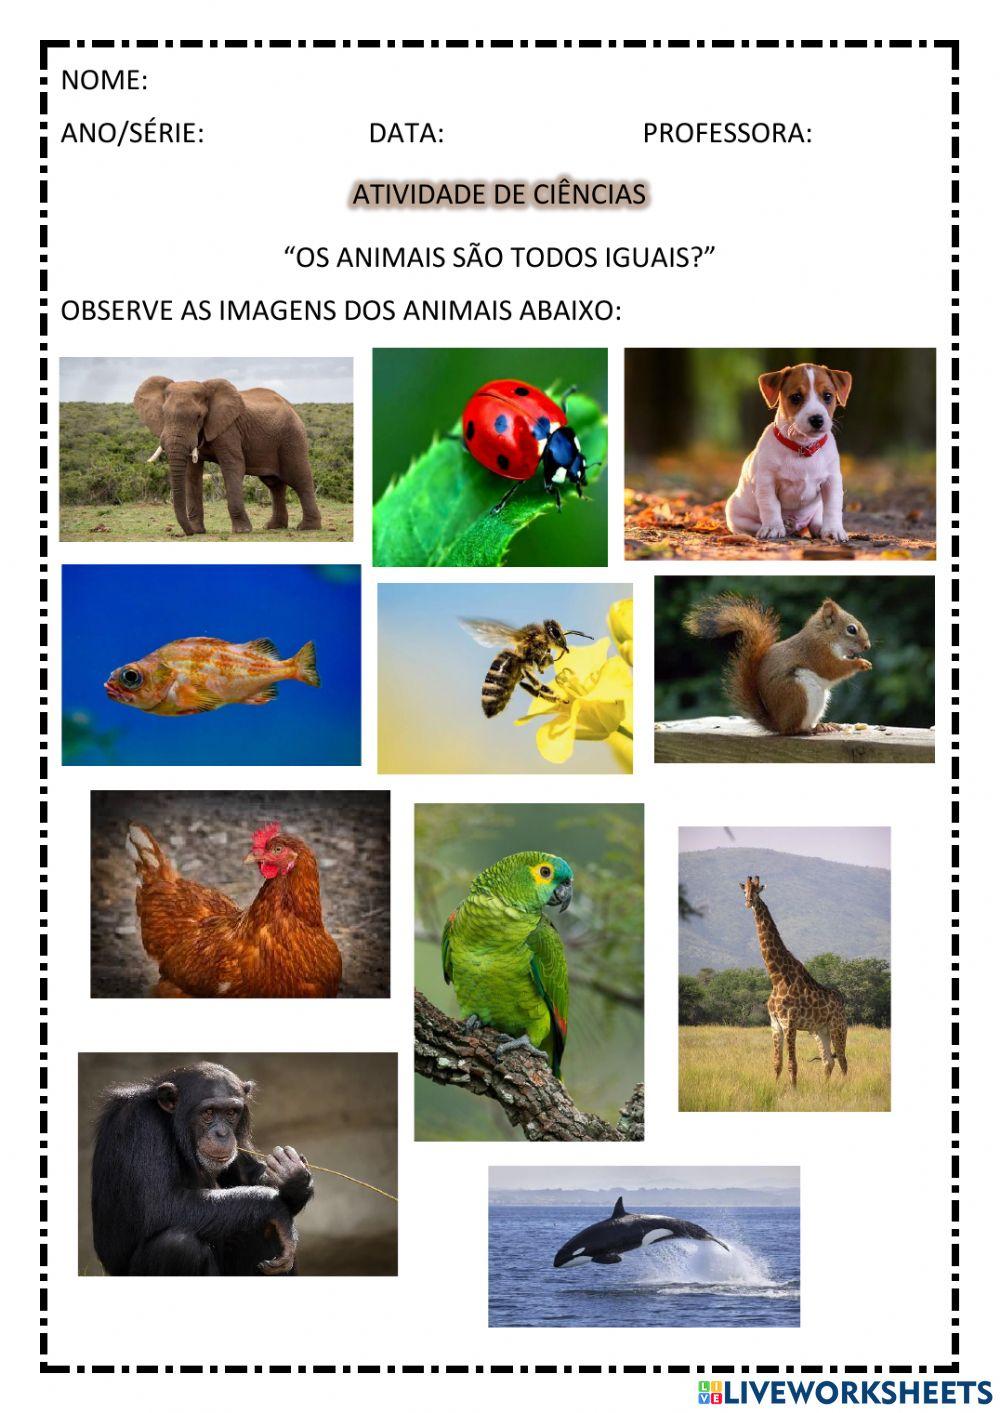 Animais são todos iguais?